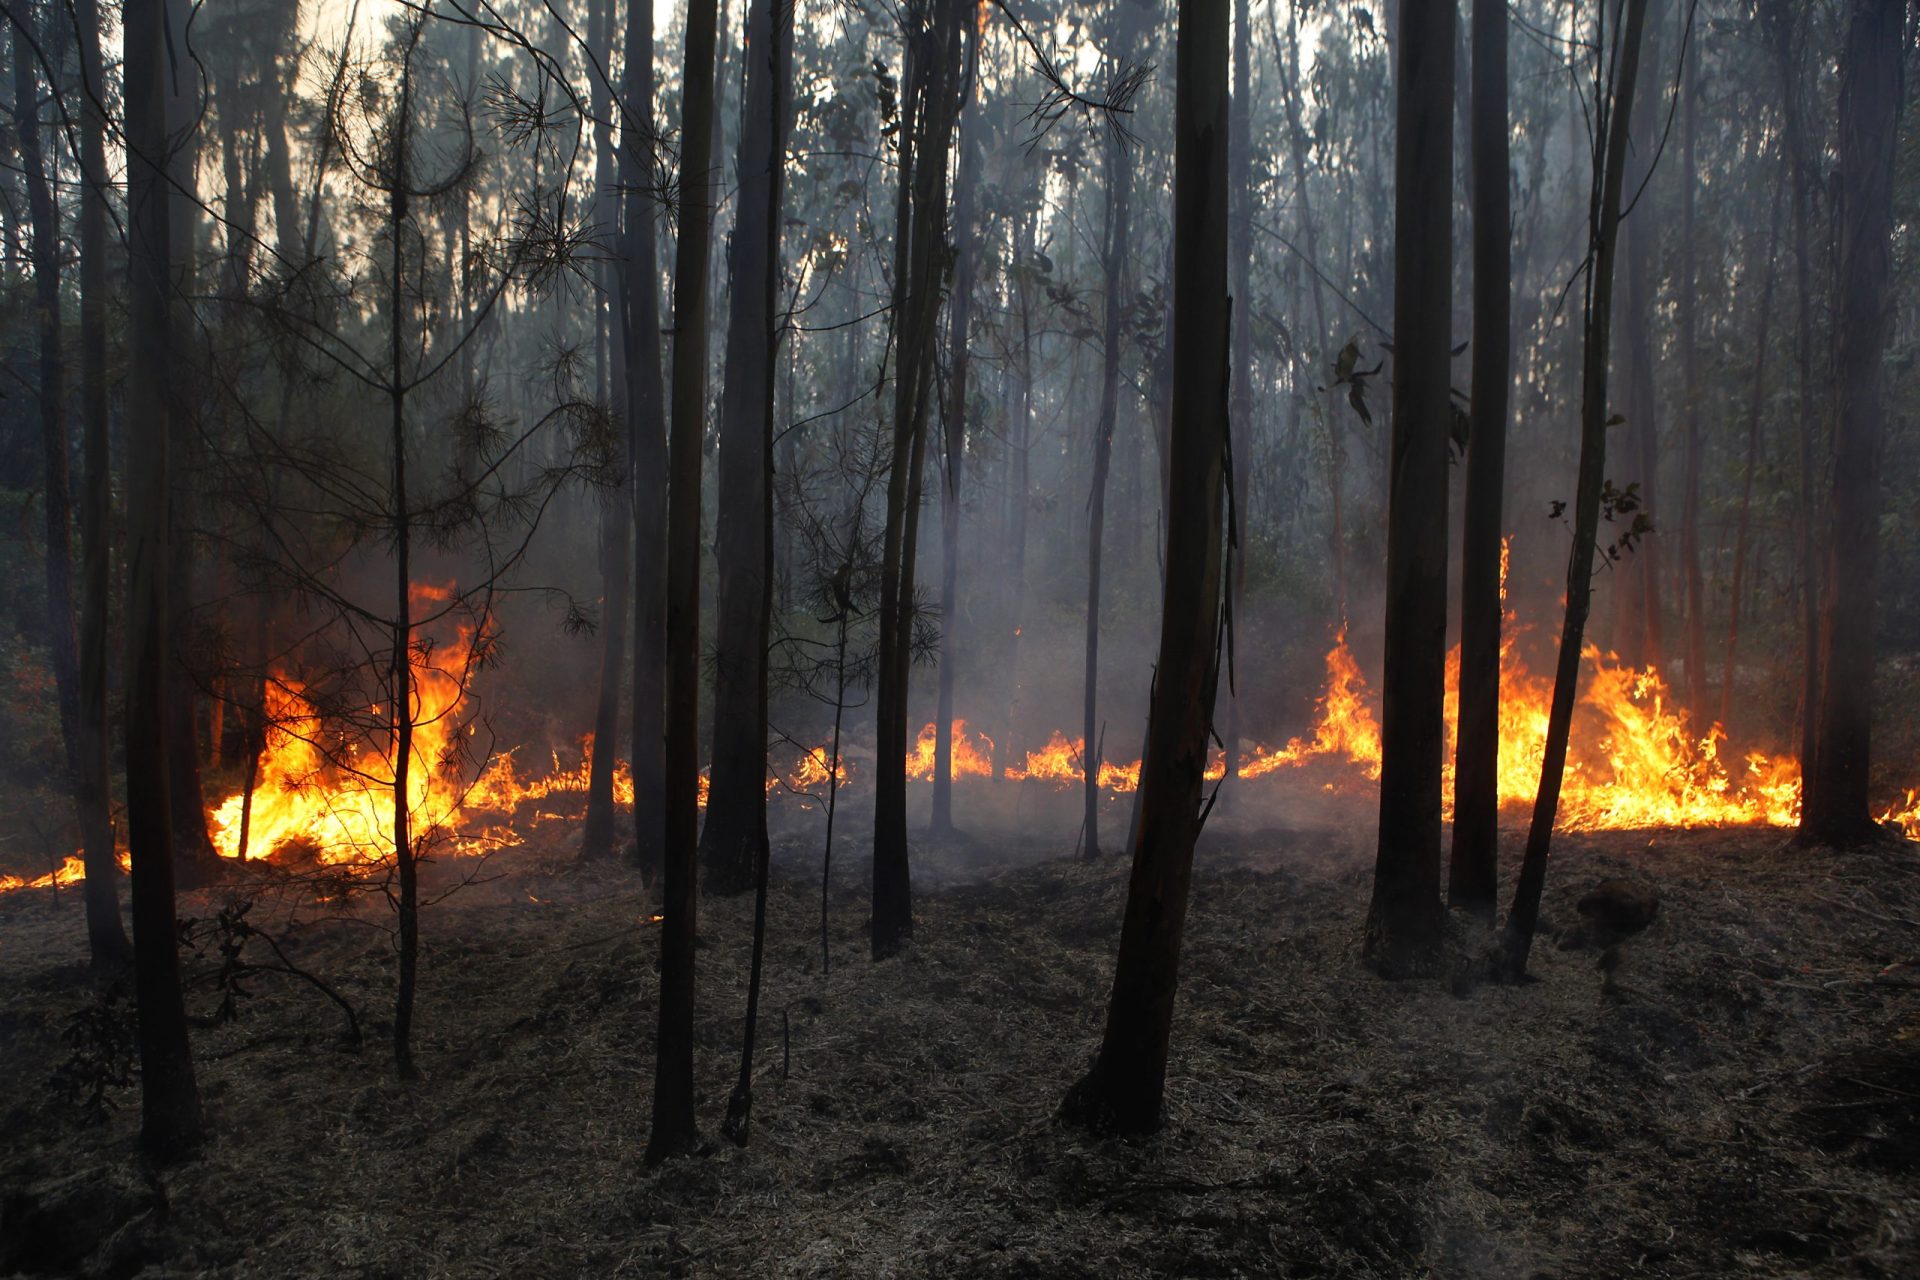 Emanuel Oliveira. “Muita gente fez queimadas. Habituámo-nos a gerir a paisagem com fogo”